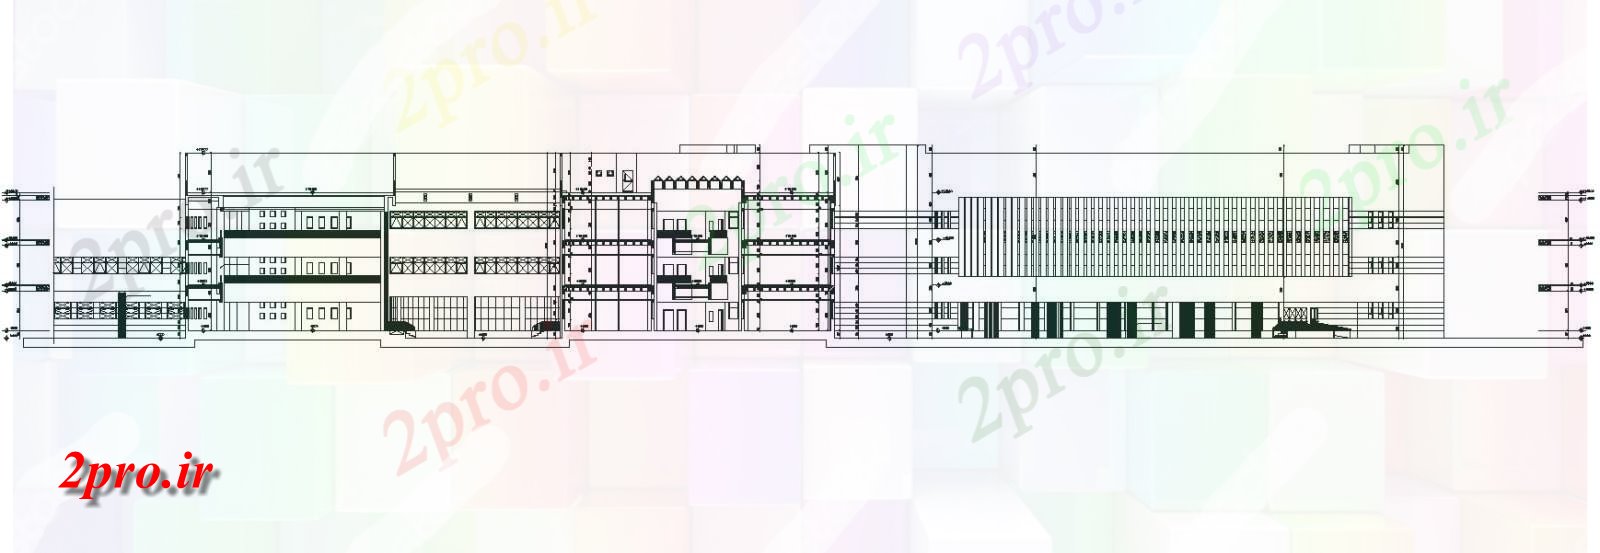 دانلود نقشه پلان مقطعی  معماری  اتوکد  از بخش ساختمان دانشگاه ، آموزشکده  دو بعدی   جزئیات (کد49223)